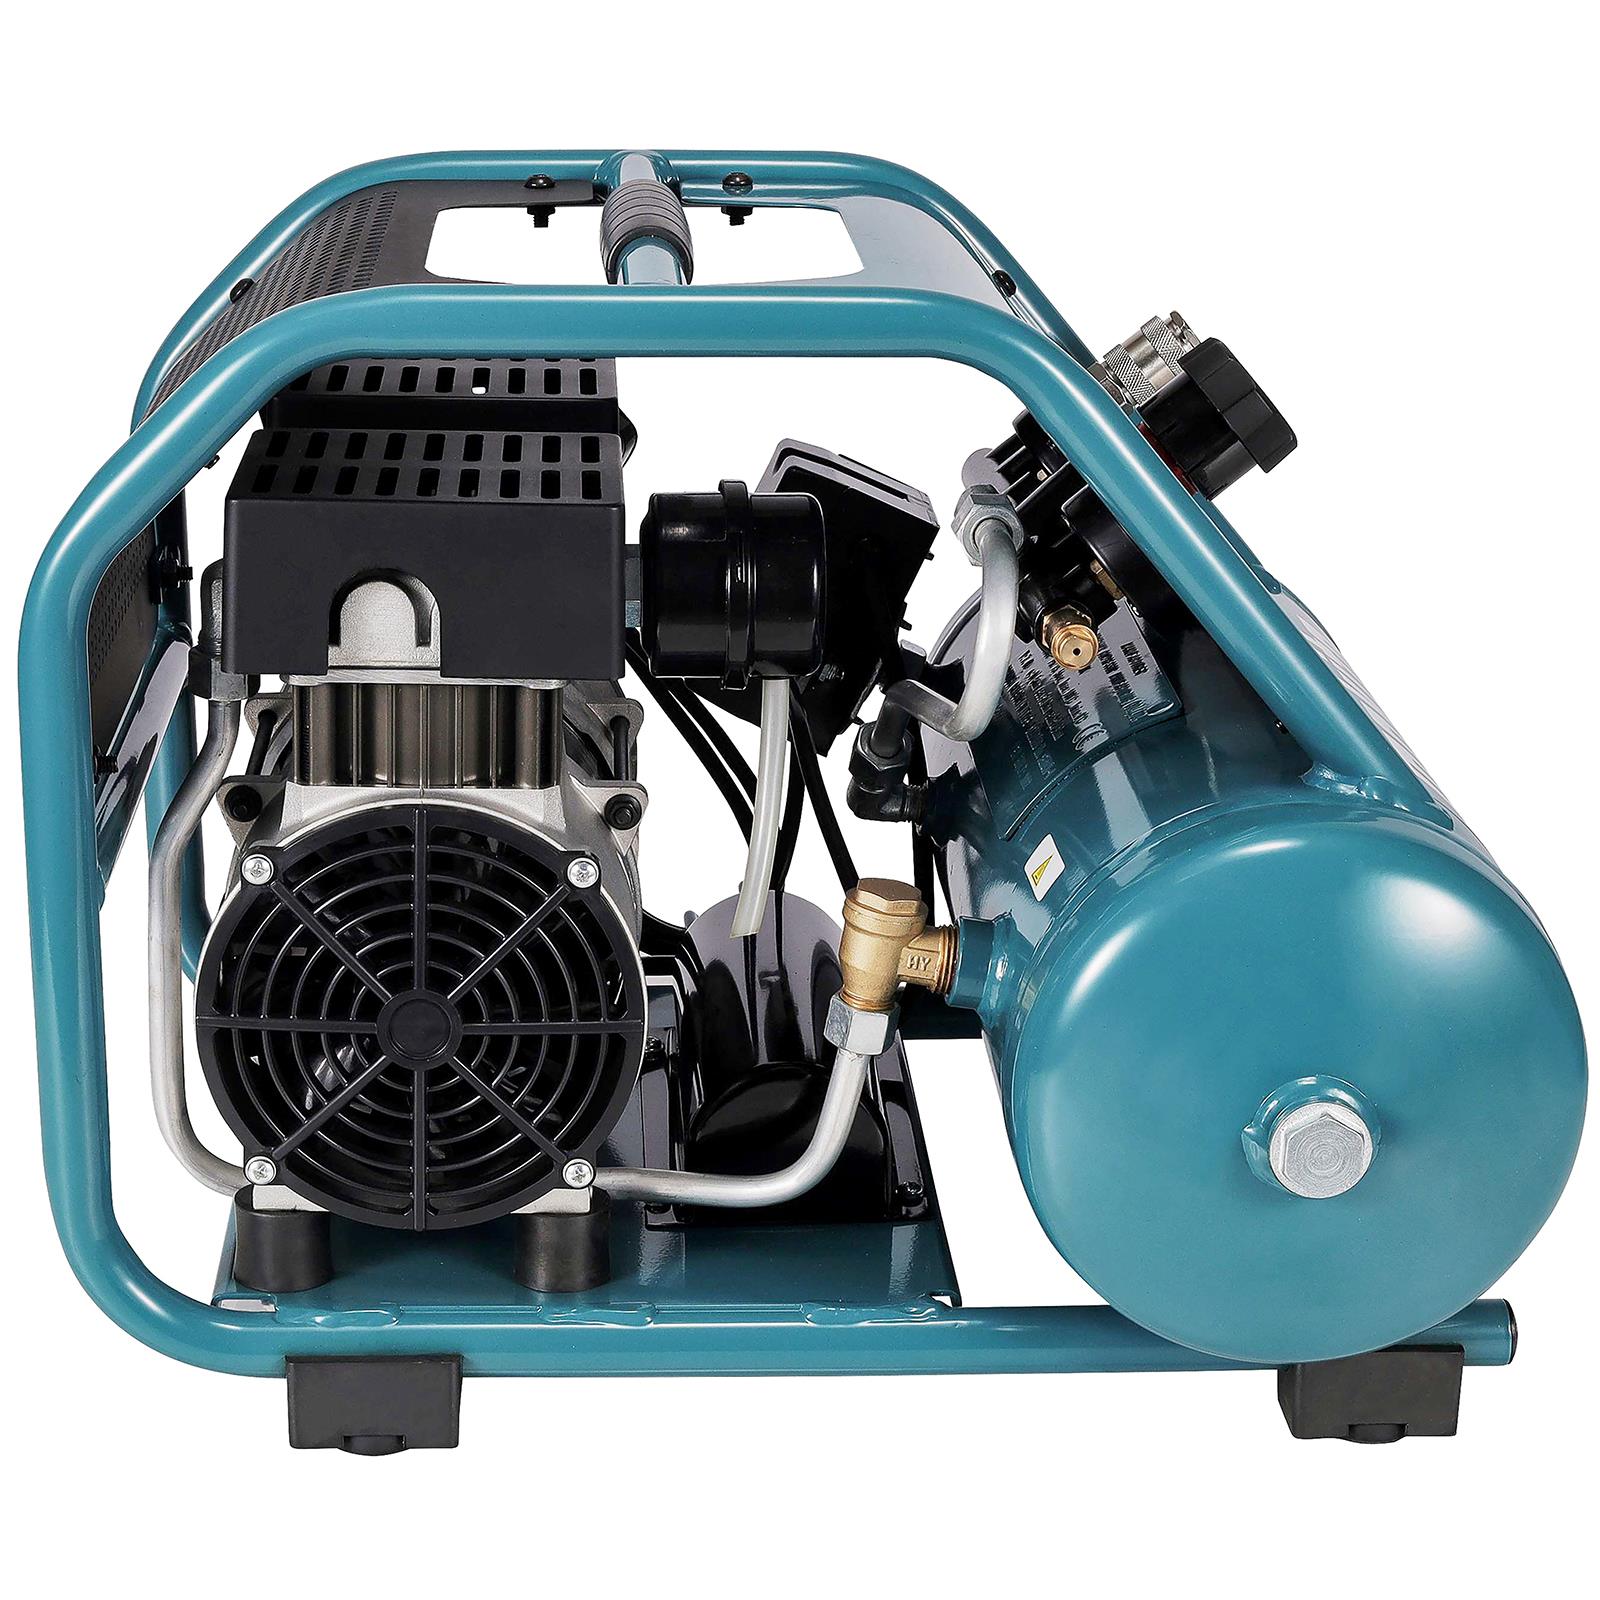 Makita Air Compressor Compact 7.6L 9.3 Bar 650W Choose Voltage 110V or 240V MAC210Q